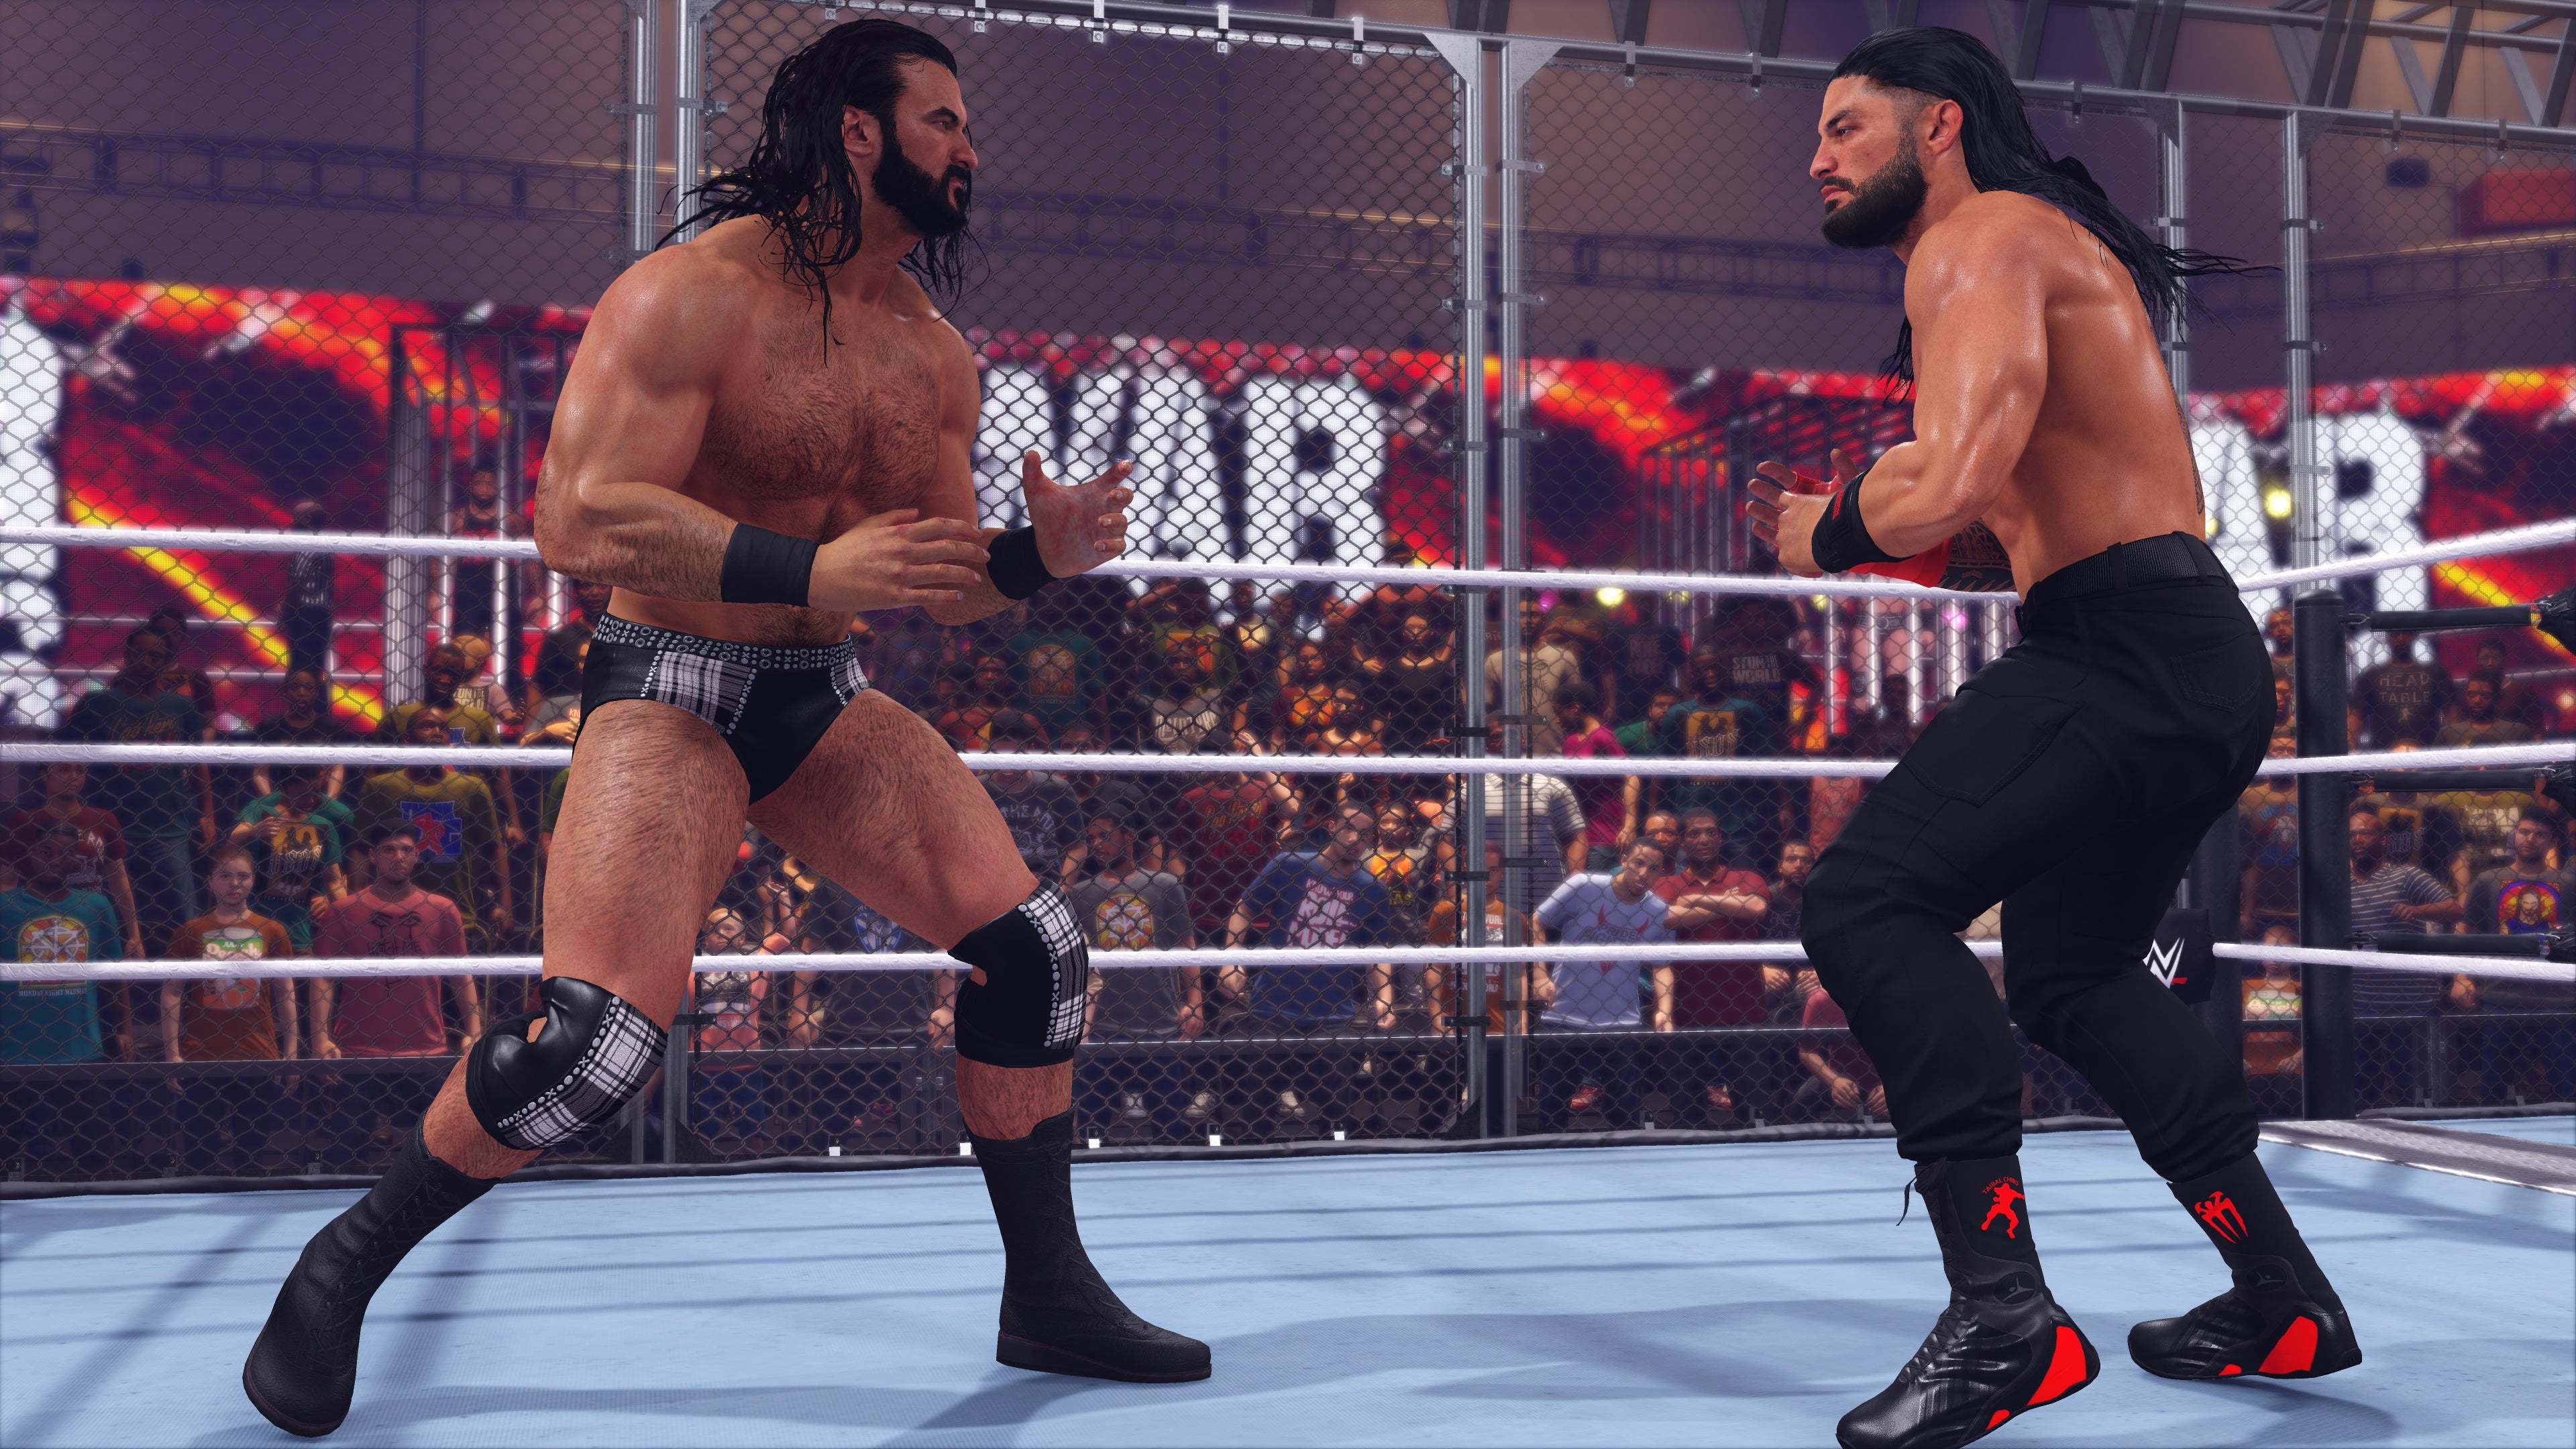 WWE 2K23 Standard Edition - Xbox Series [New] | Yard's Games Ltd